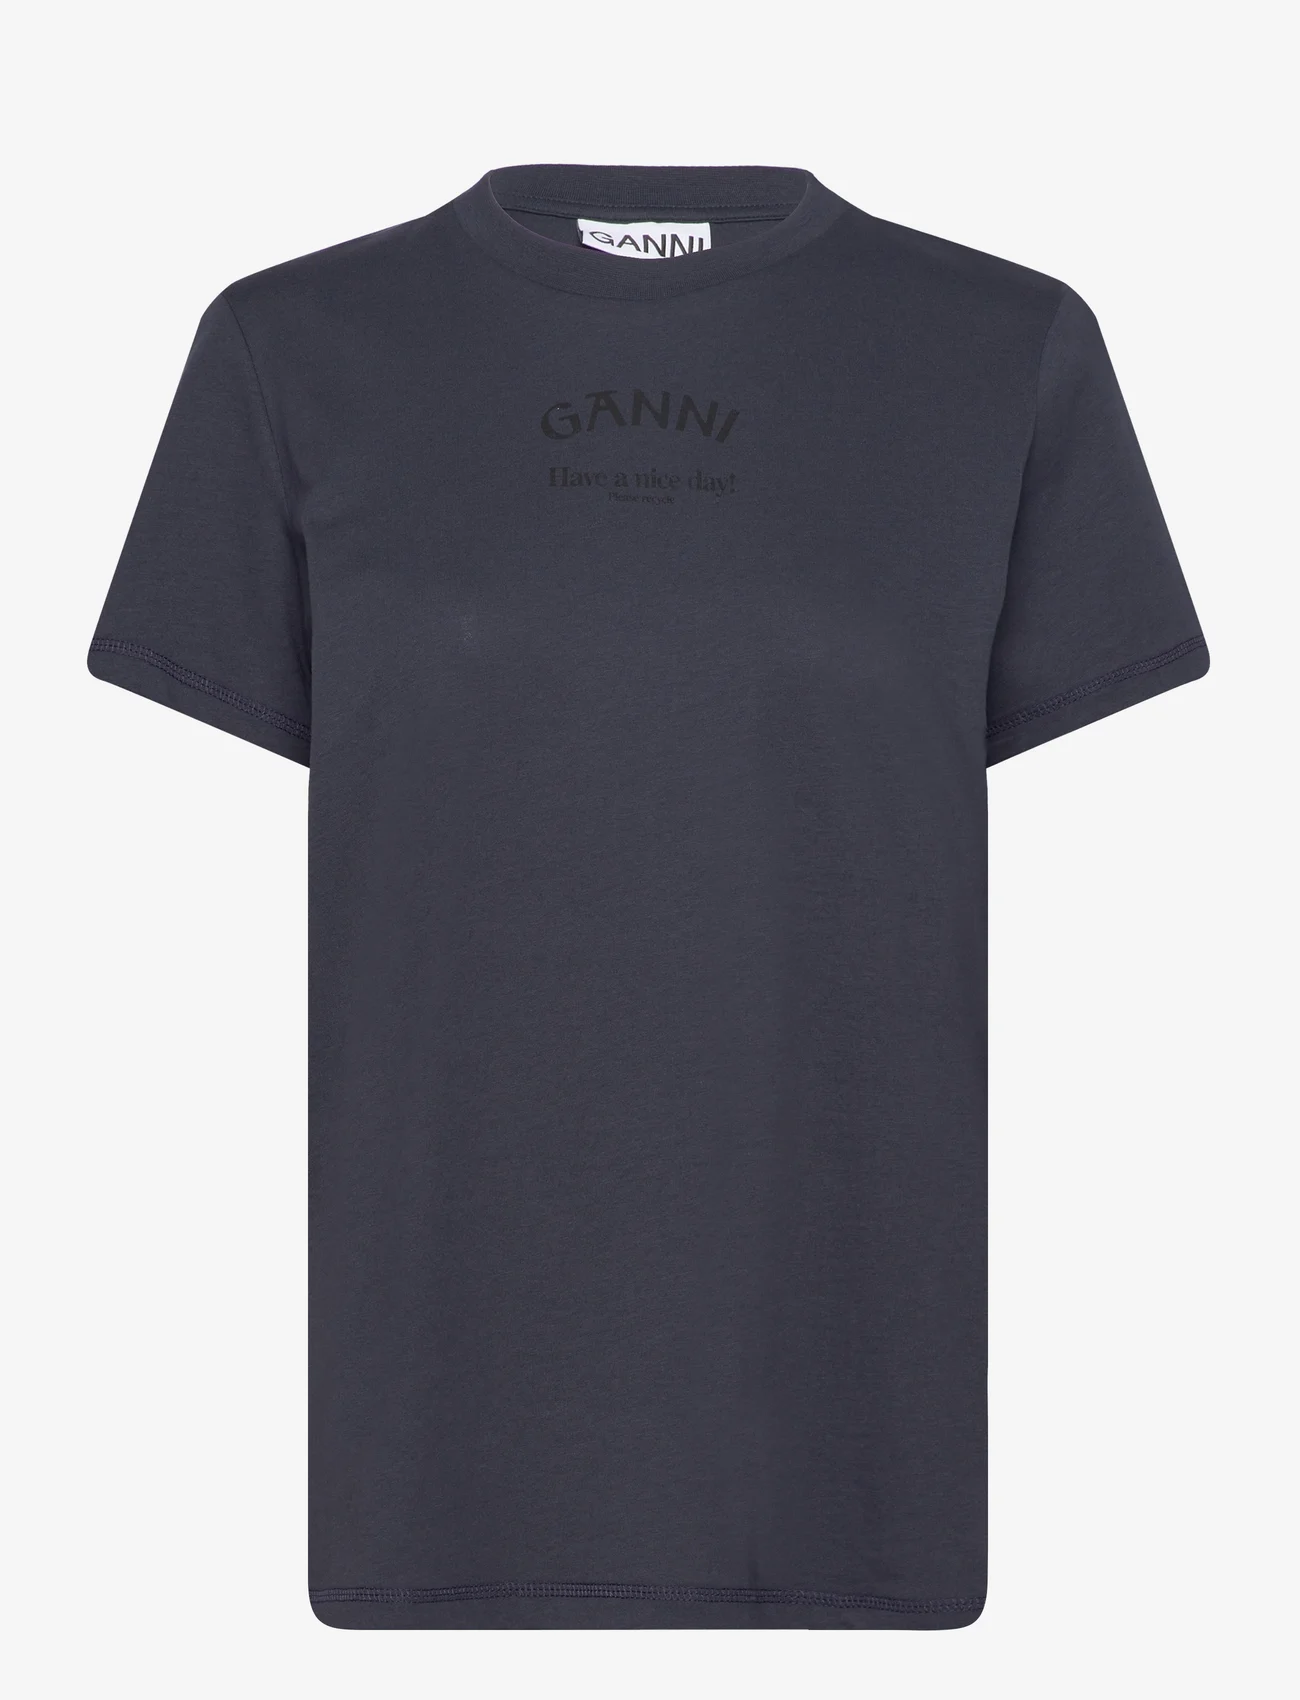 Ganni - Thin Jersey - t-shirts - sky captain - 0